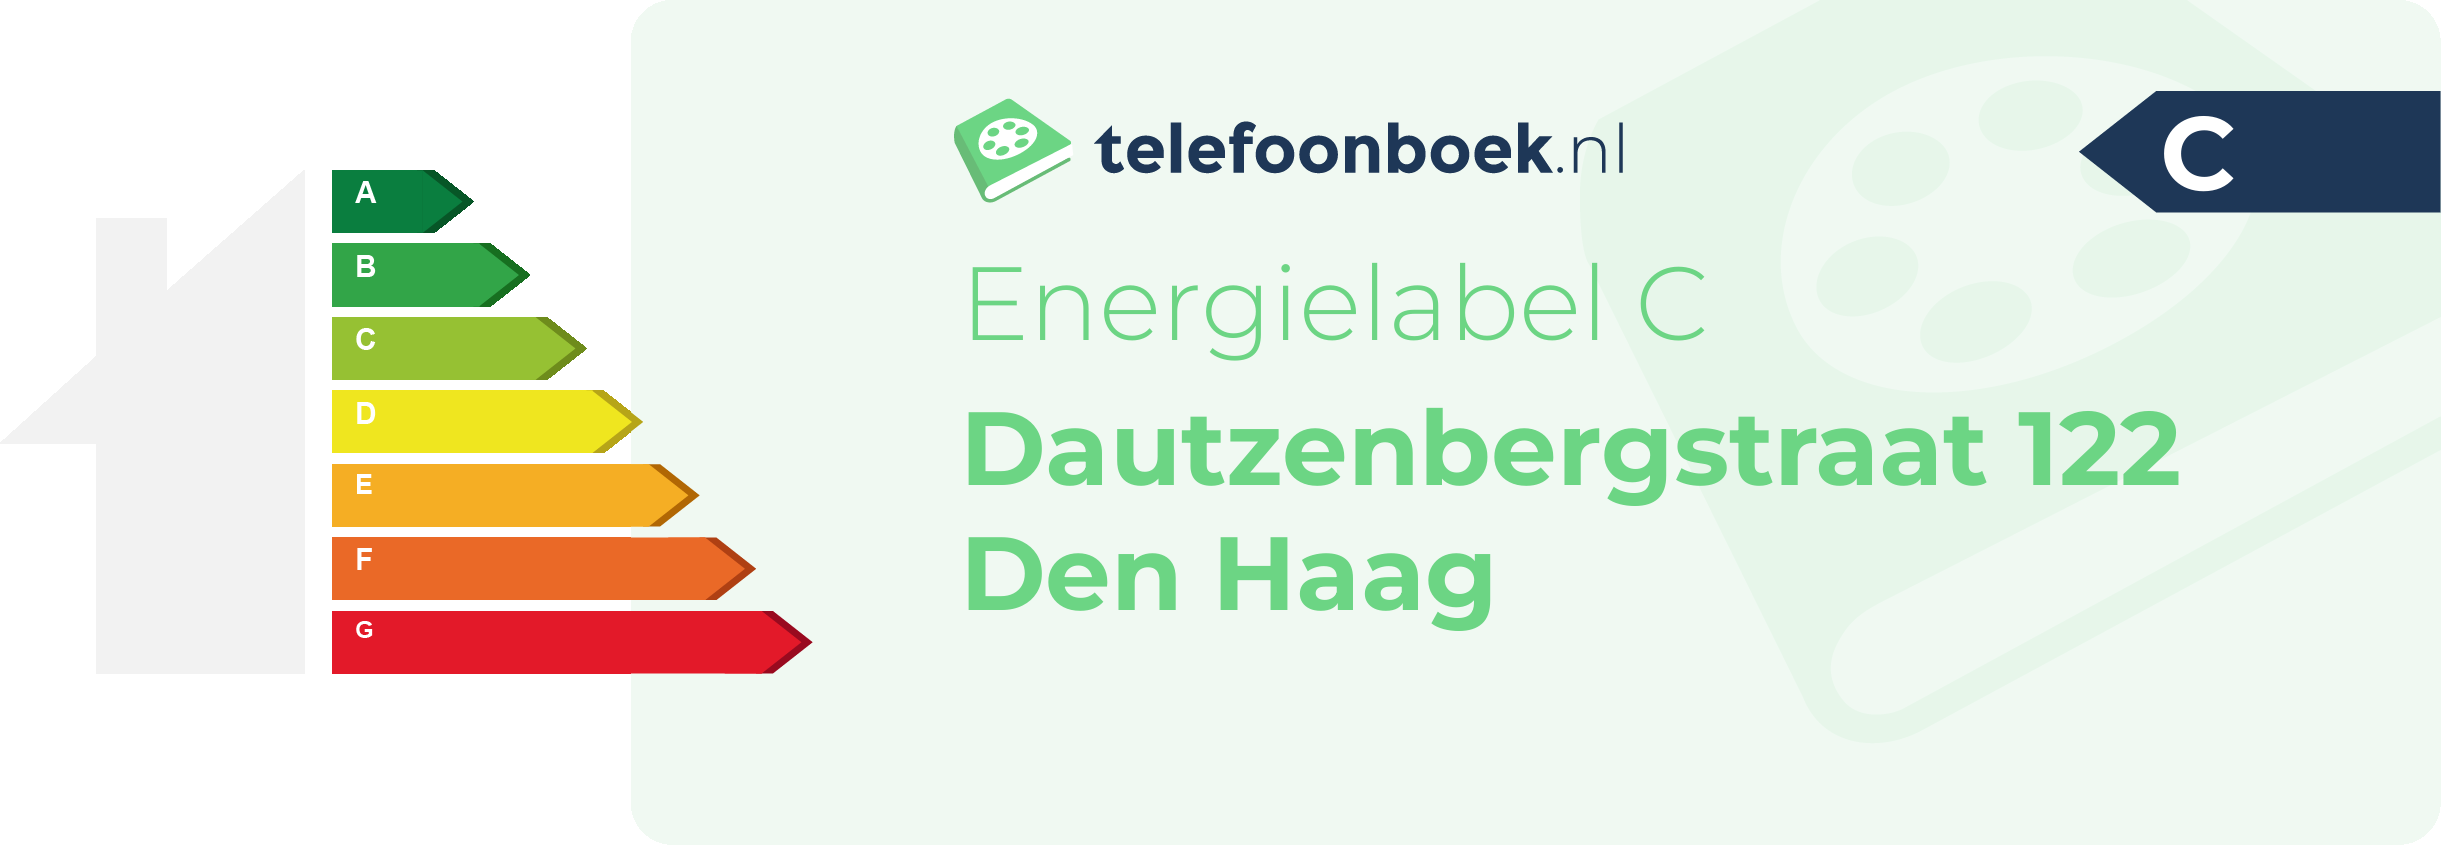 Energielabel Dautzenbergstraat 122 Den Haag